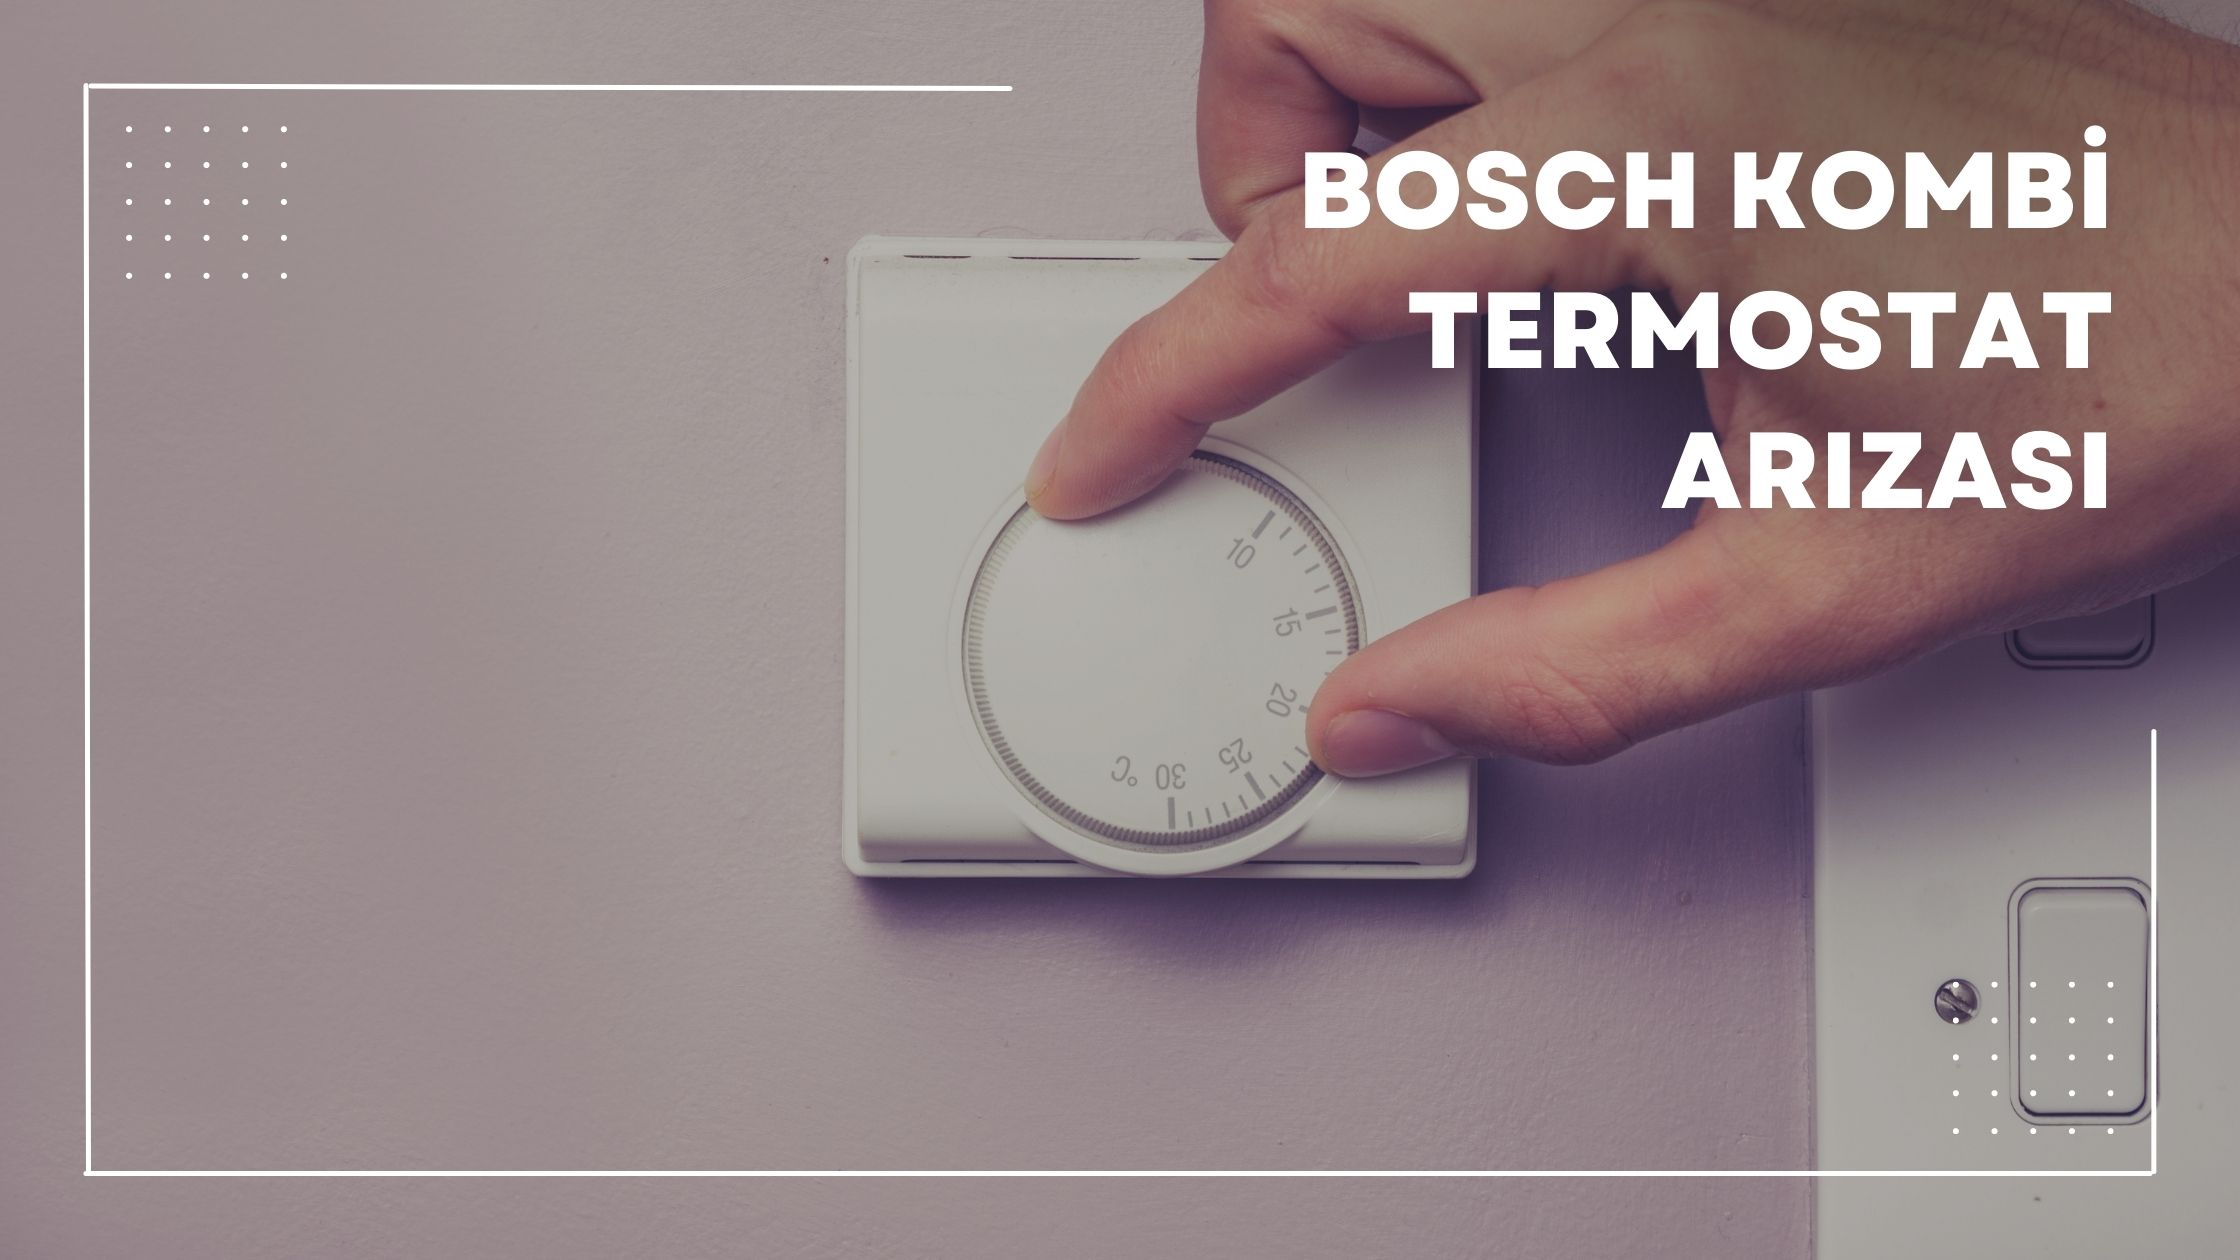 Bosch Kombi Termostat Arızası